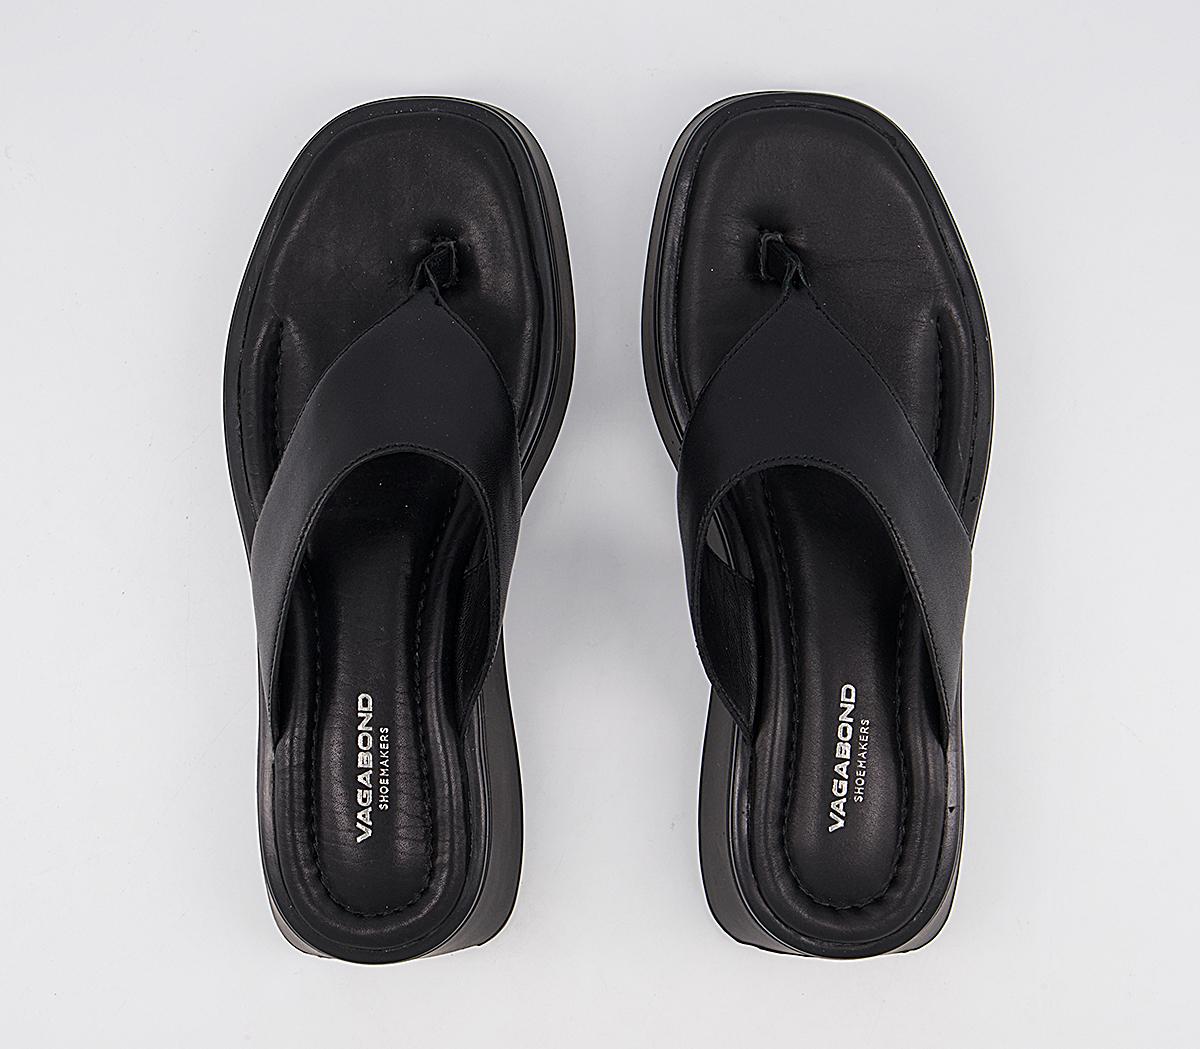 Vagabond Shoemakers Courtney Toe Thong Sandals Black - Women’s Sandals